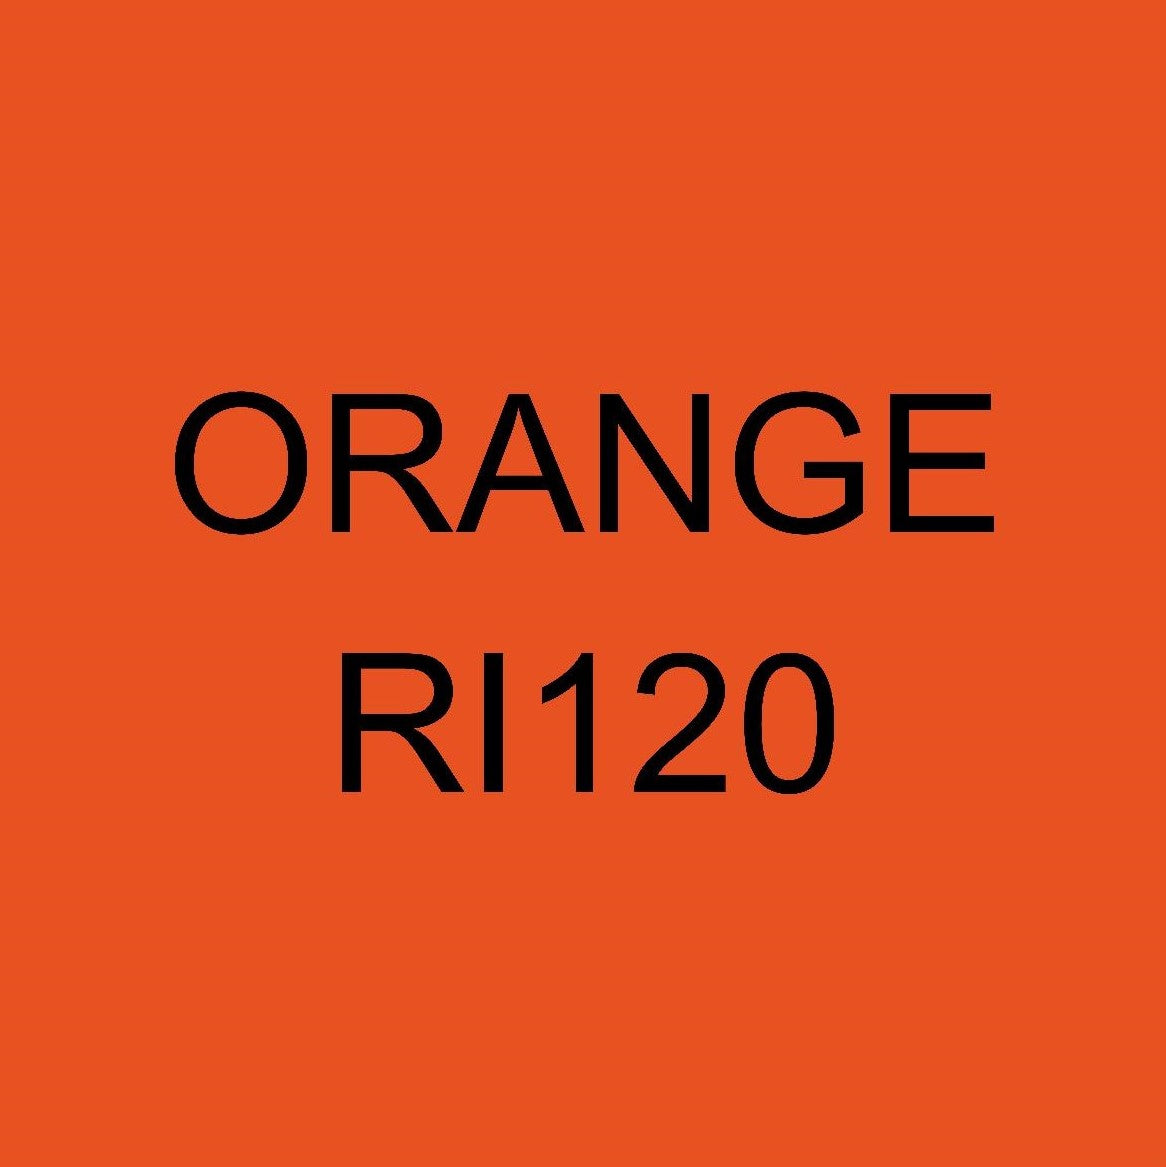 Ritrama RI-120 Orange